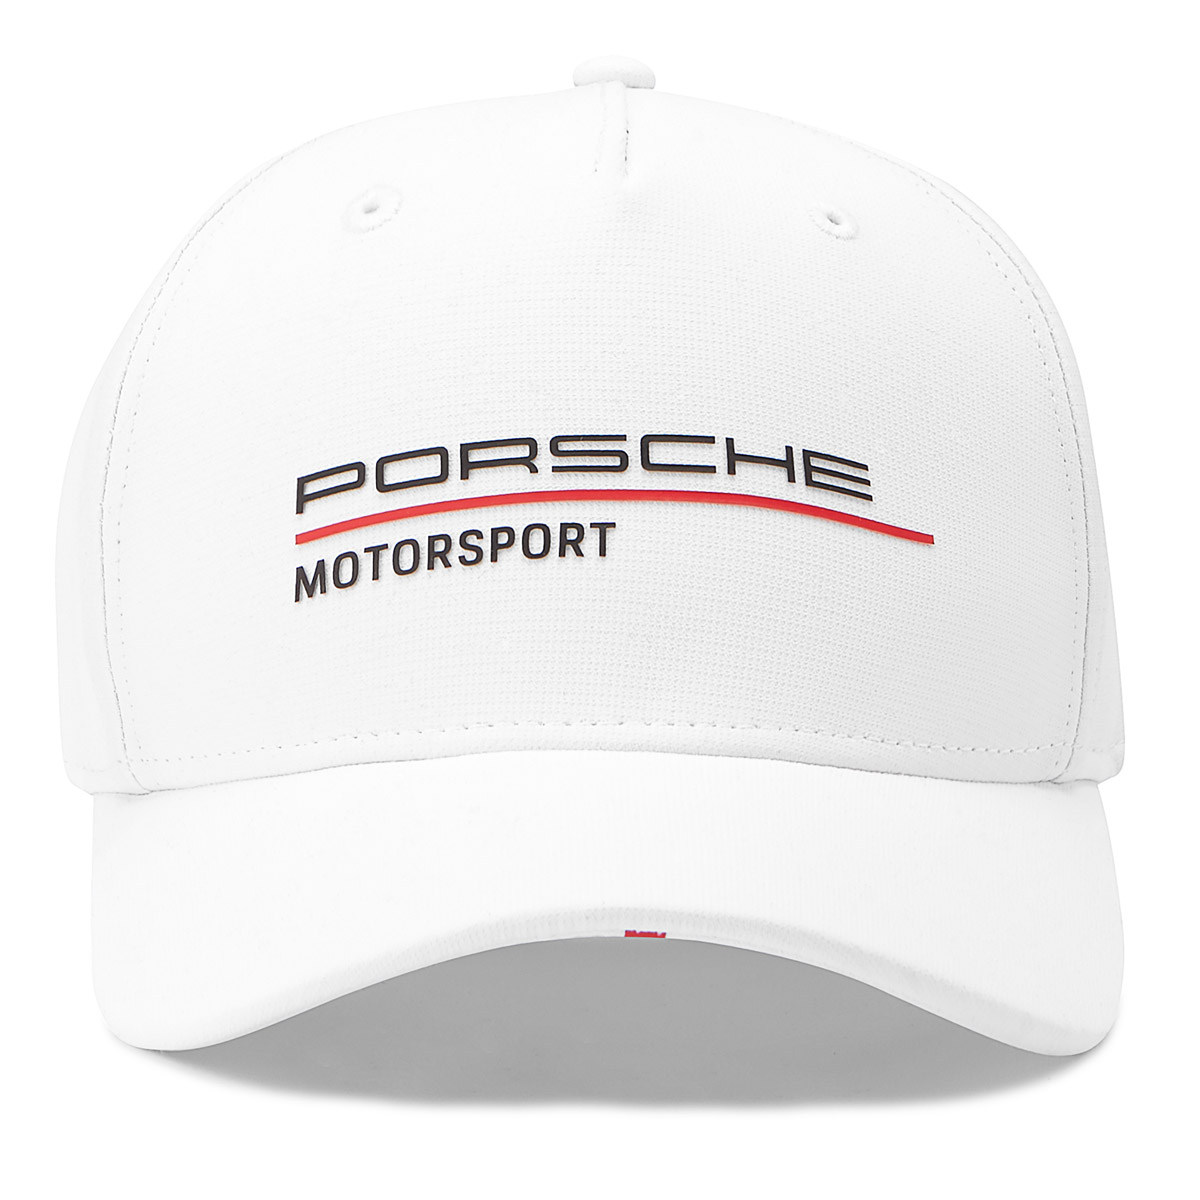 Porsche Motorsport team cap - white